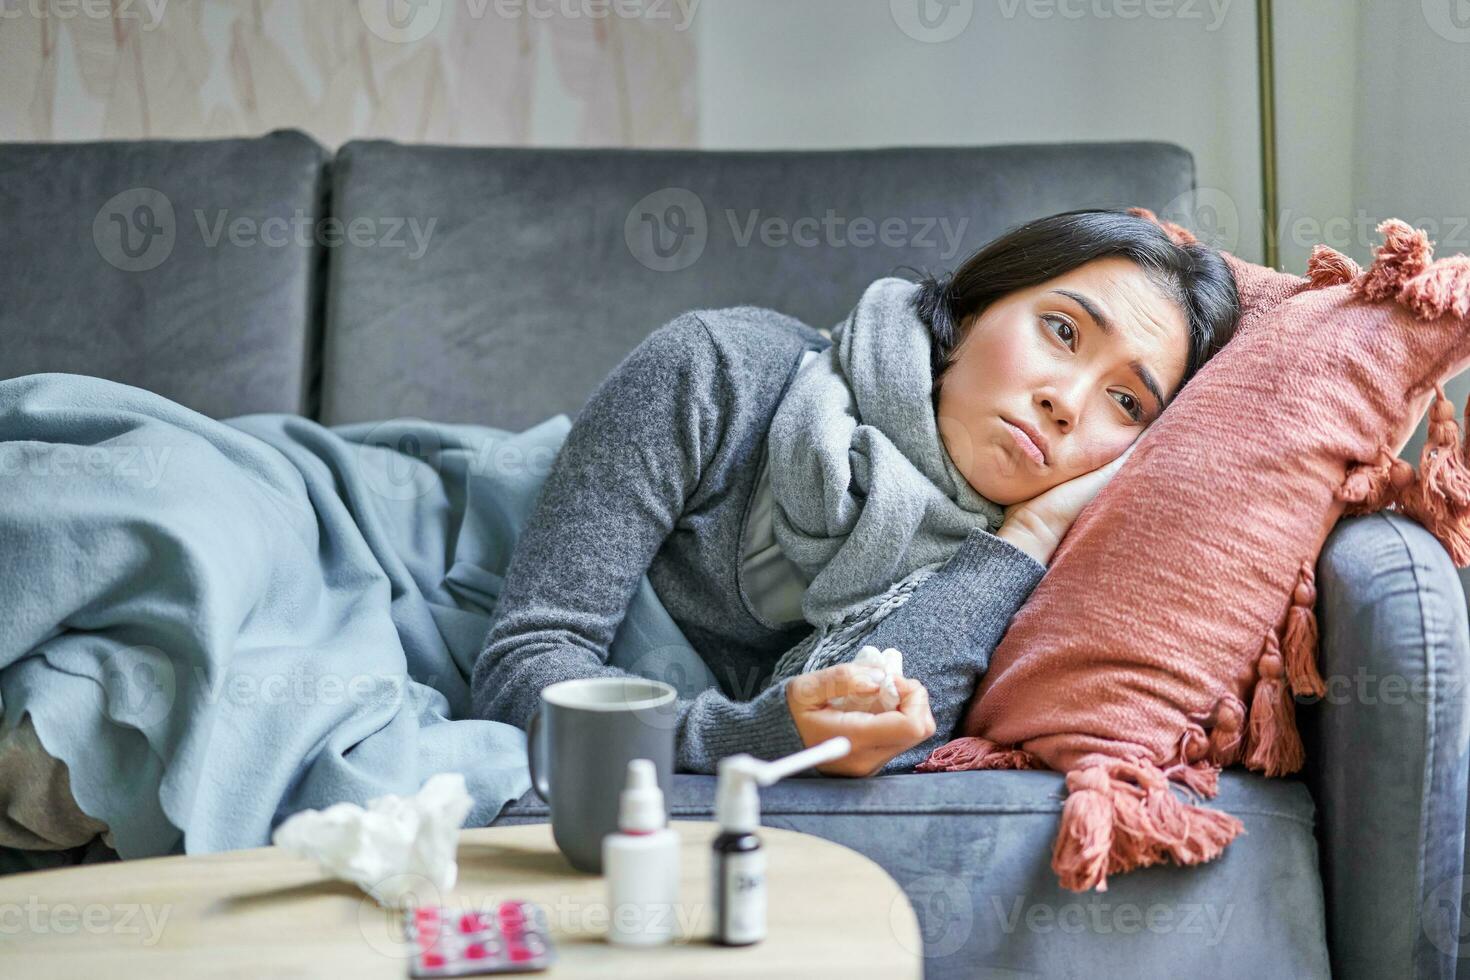 krank traurig Koreanisch Frau Lügen auf Sofa, Gefühl nicht wohl, fangen kalt, Grippe und Temperatur, suchen verärgern, nehmen Medikation foto